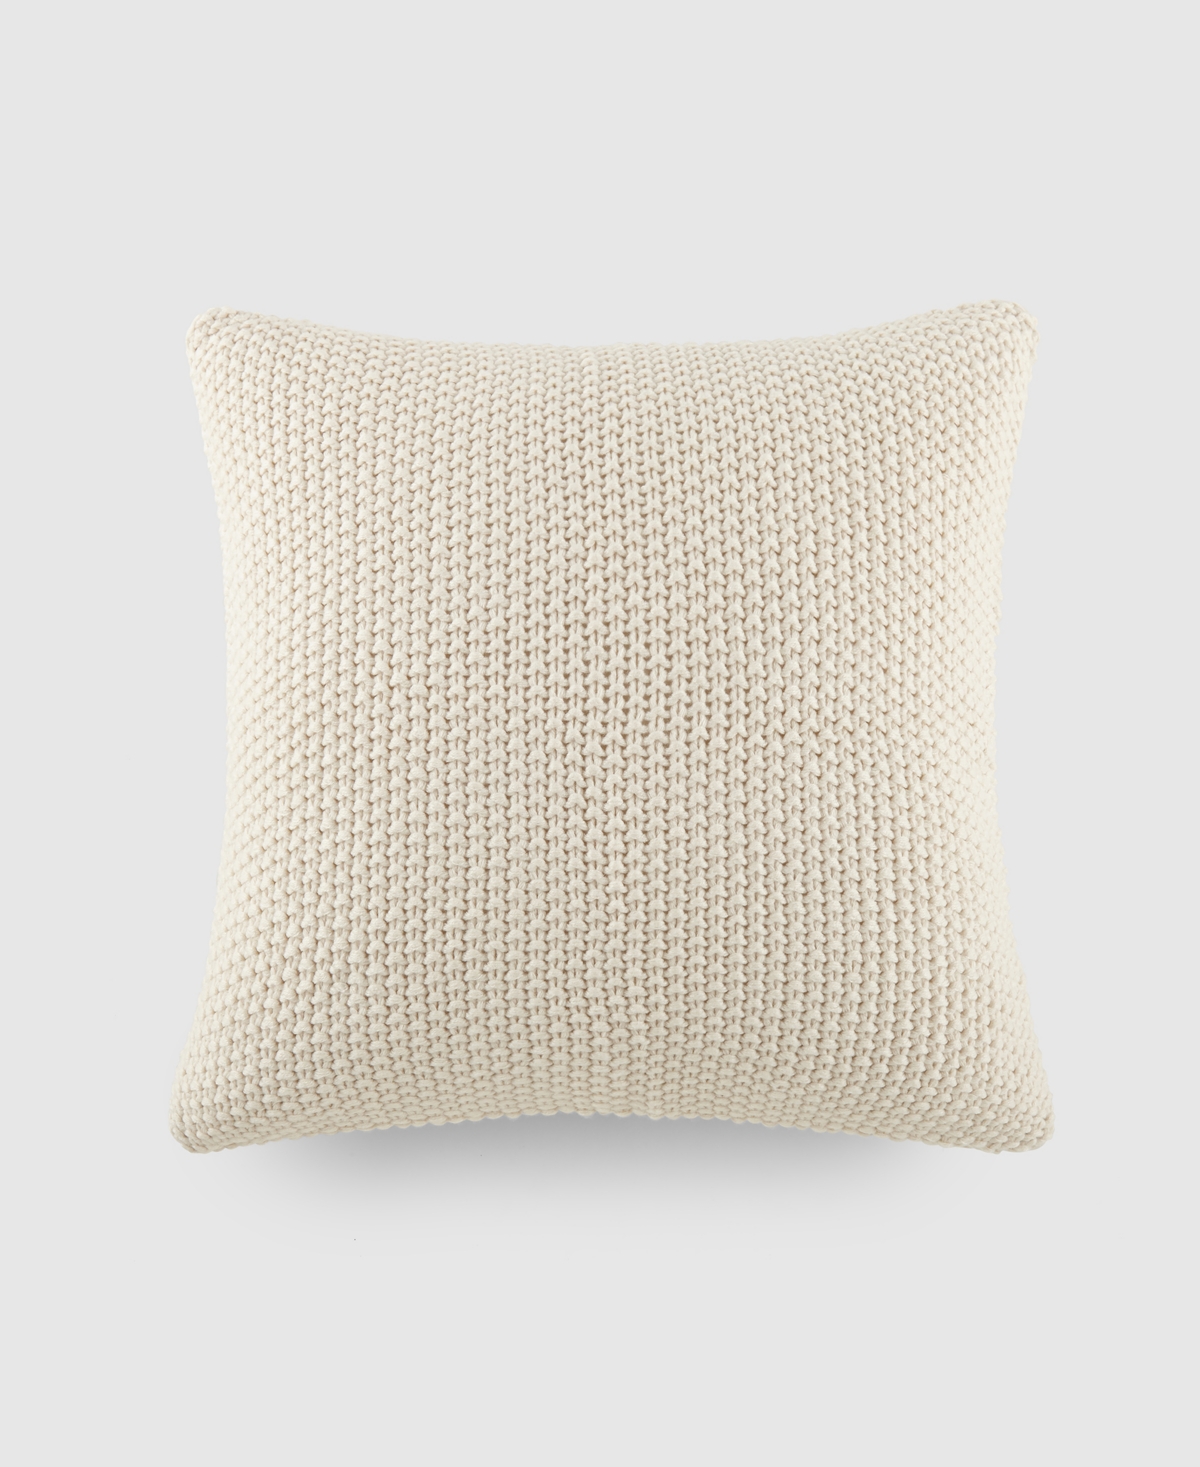 Ienjoy Home Stitch Knit Decorative Pillow, 20" X 20" In Ivory